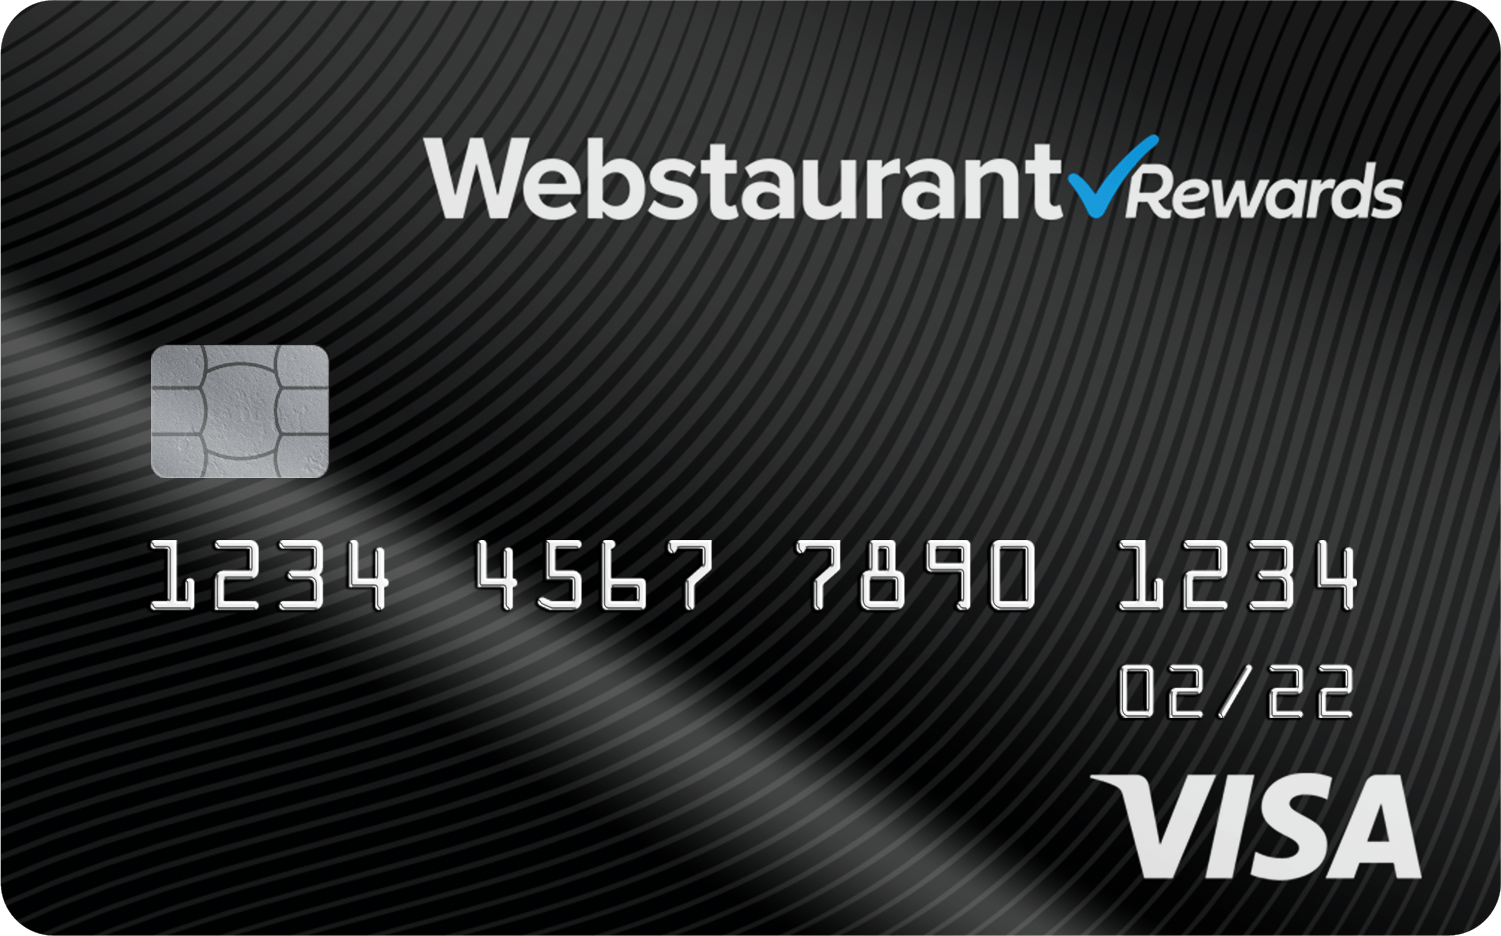 Webstaurant Rewards Visa Card